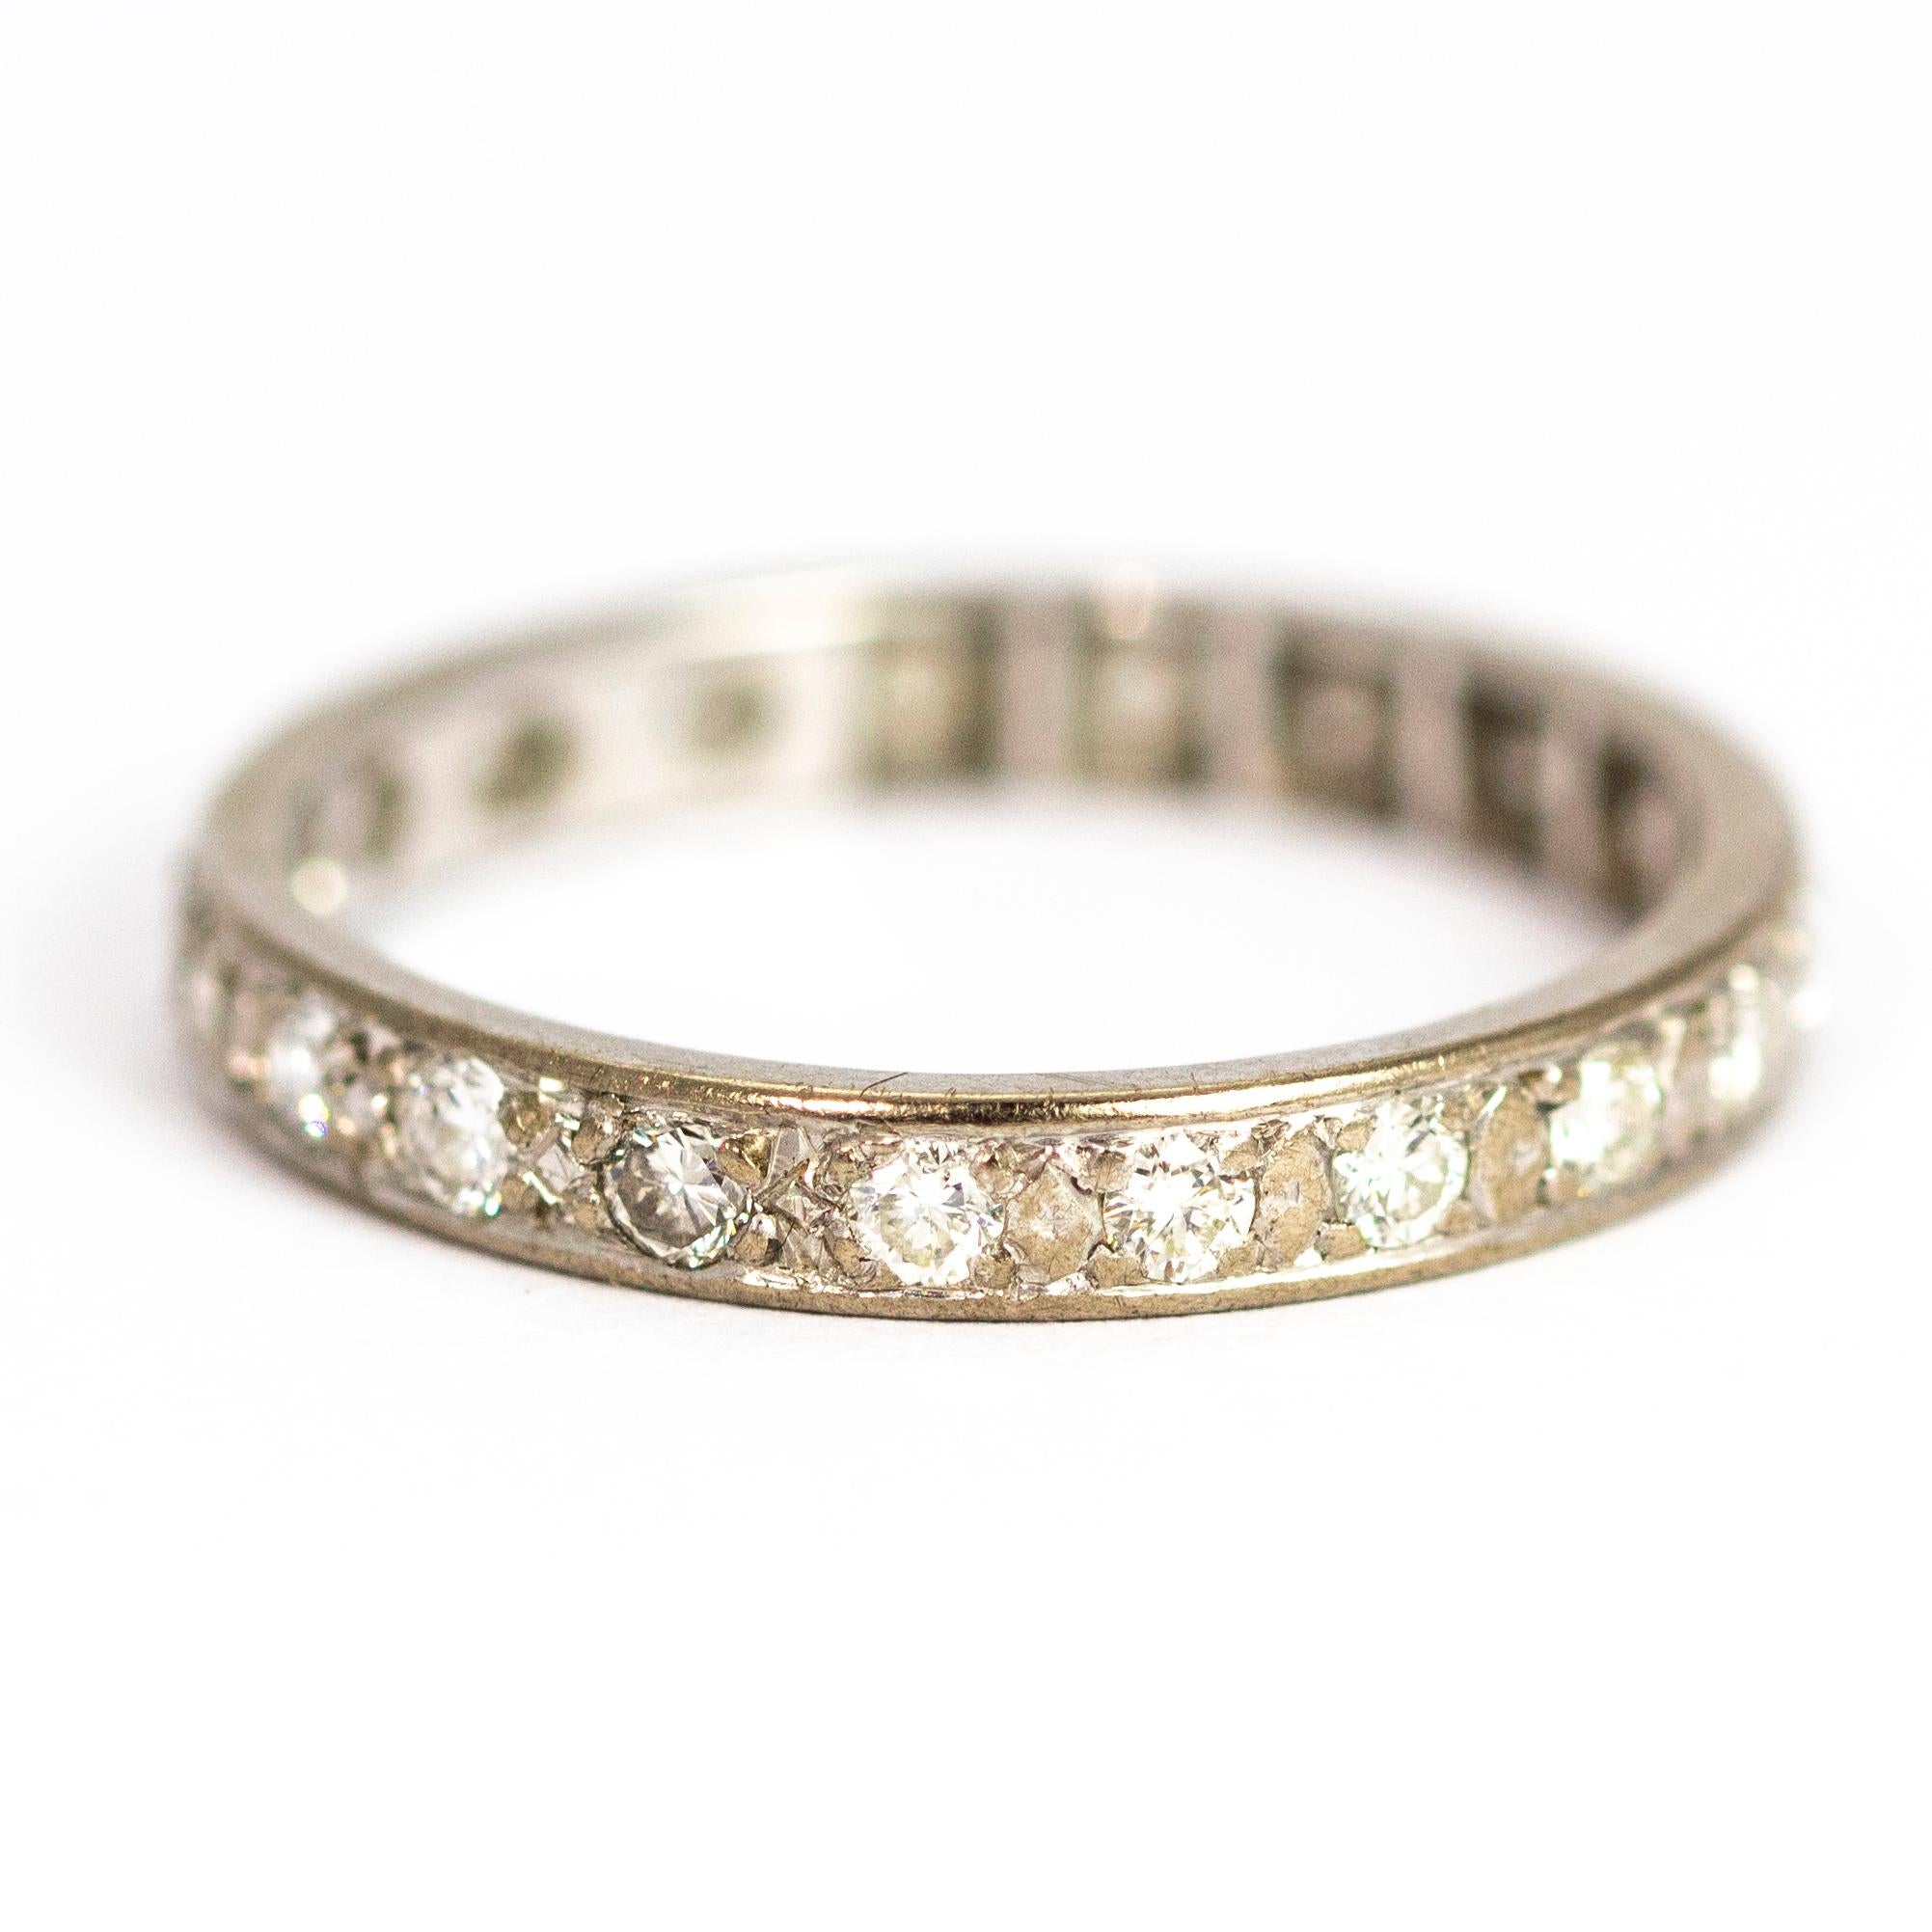 Dieses wunderbare Volldiamanten-Ewigkeitsband enthält insgesamt etwa 1,5 Karat Diamanten. Modelliert in Platin.

Ring Größe: T oder 9 1/2
Breite des Bandes: 3,2 mm
